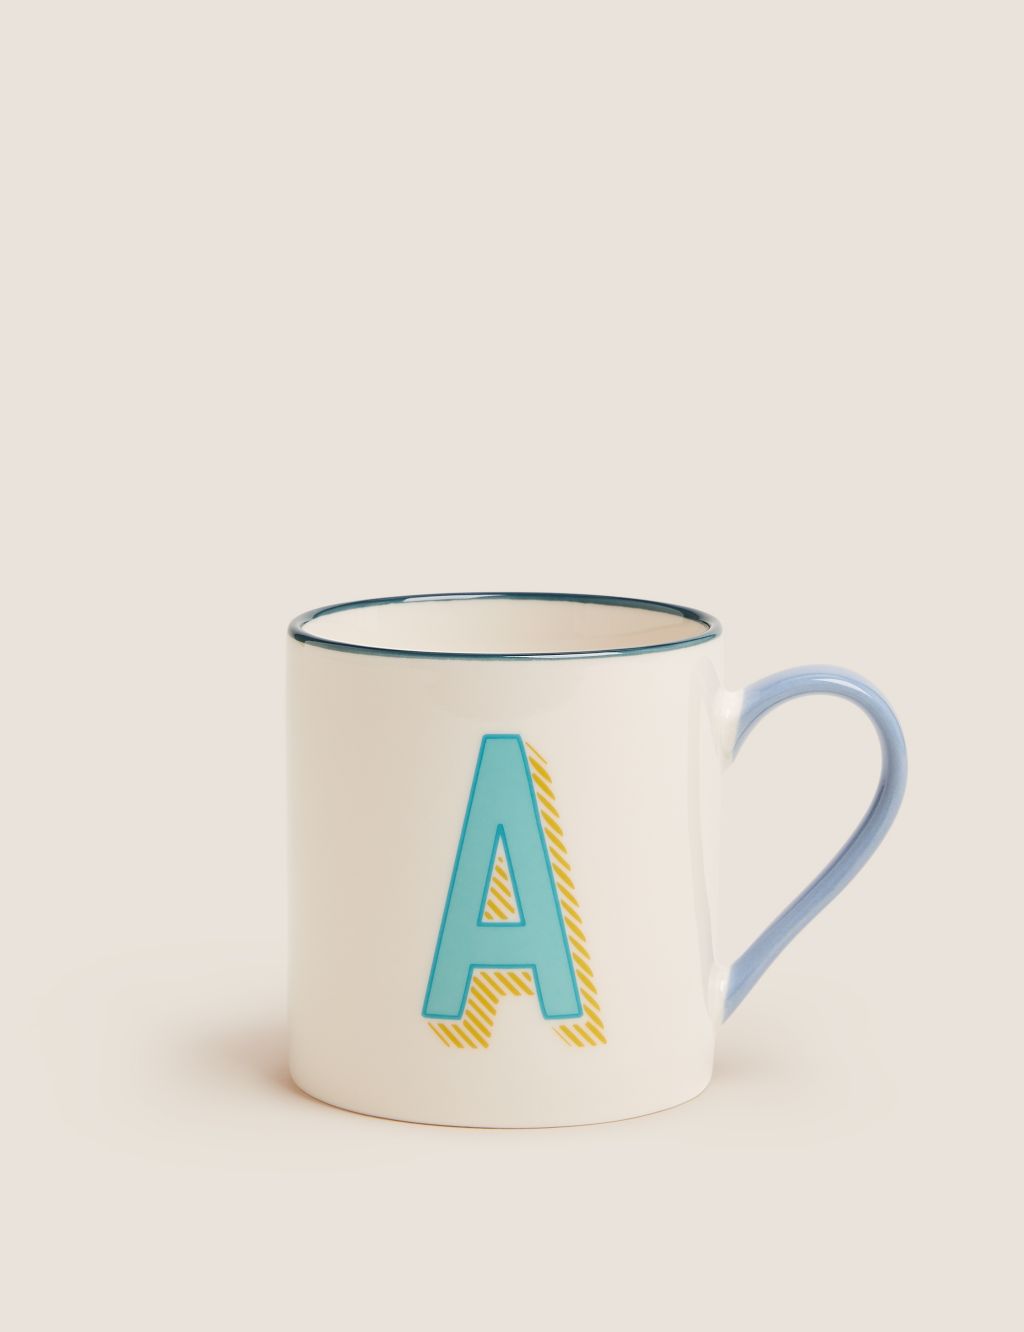 Alphabet Mug